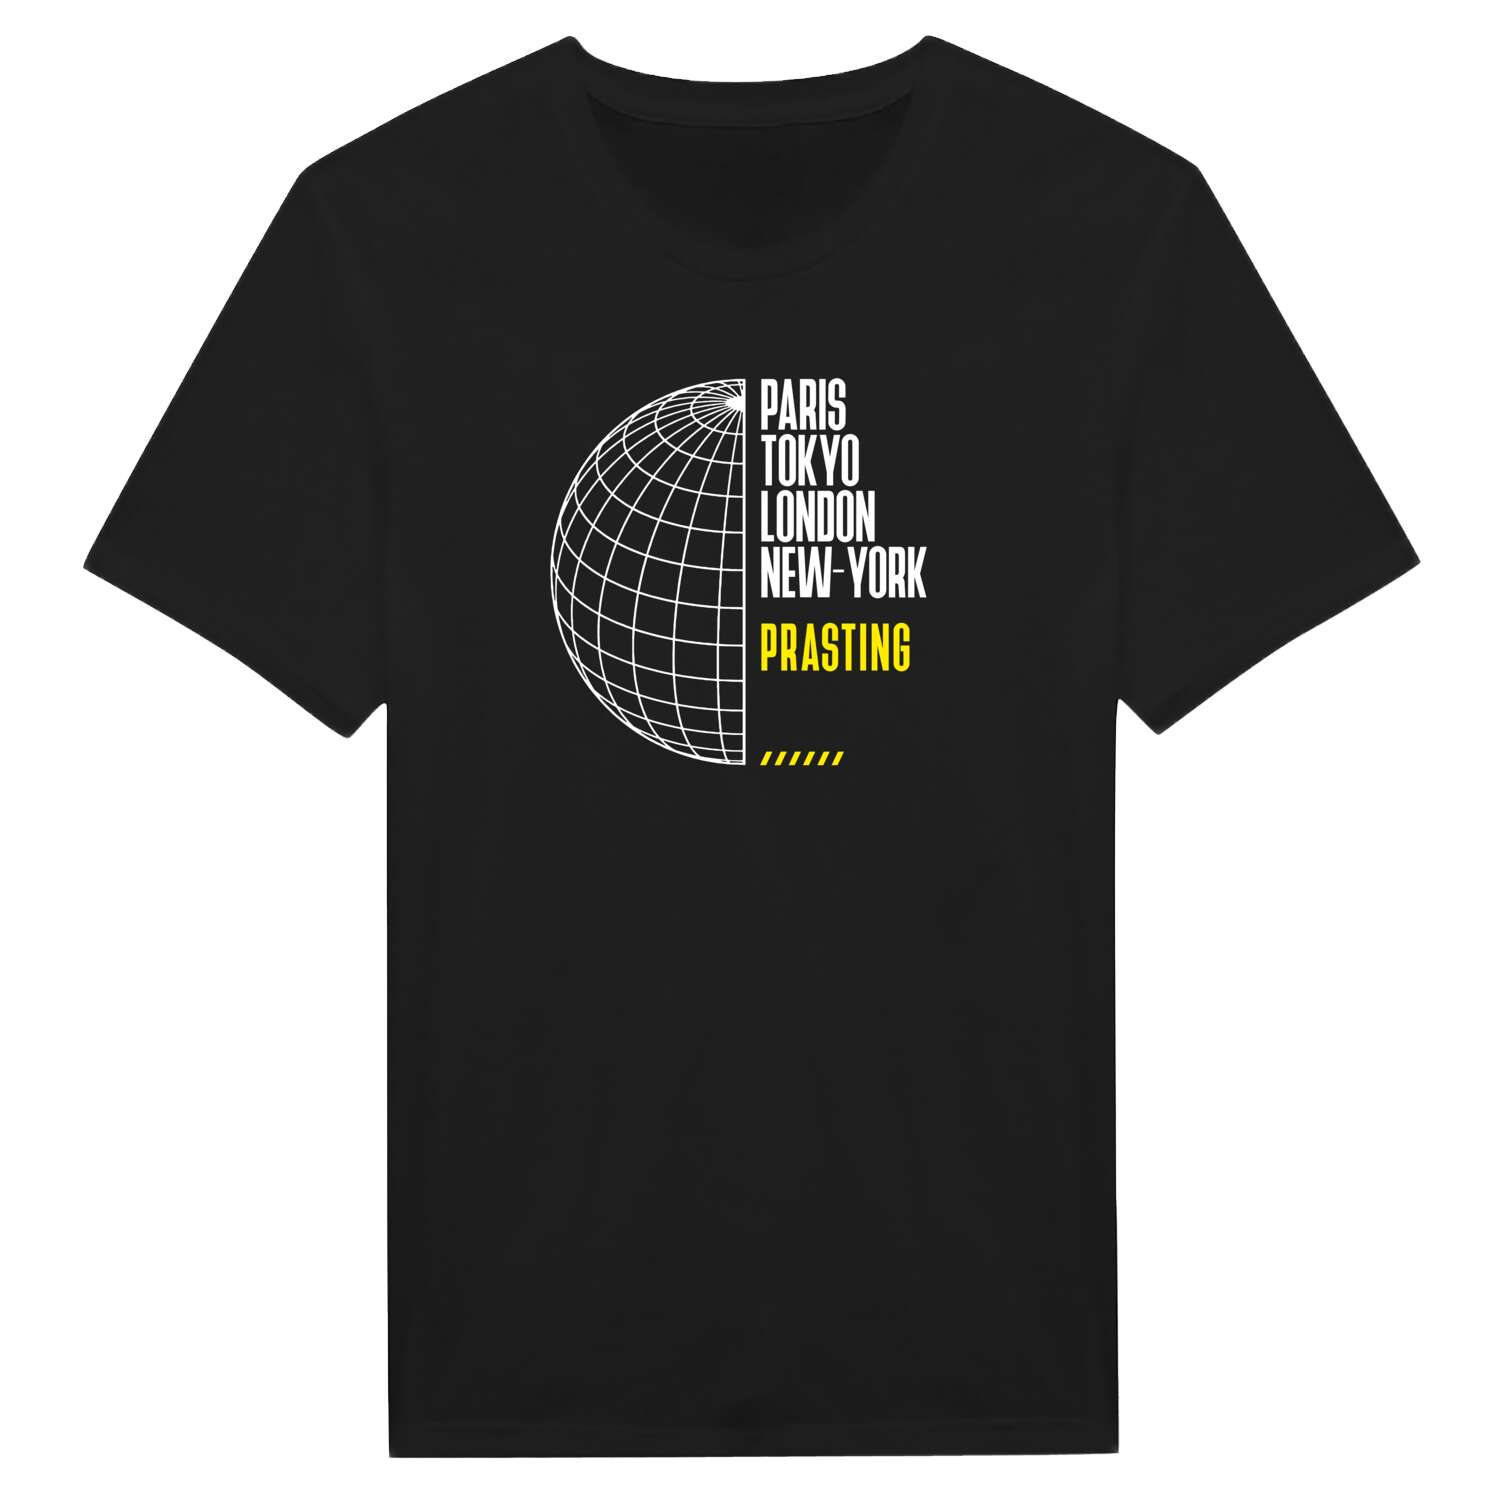 Prasting T-Shirt »Paris Tokyo London«